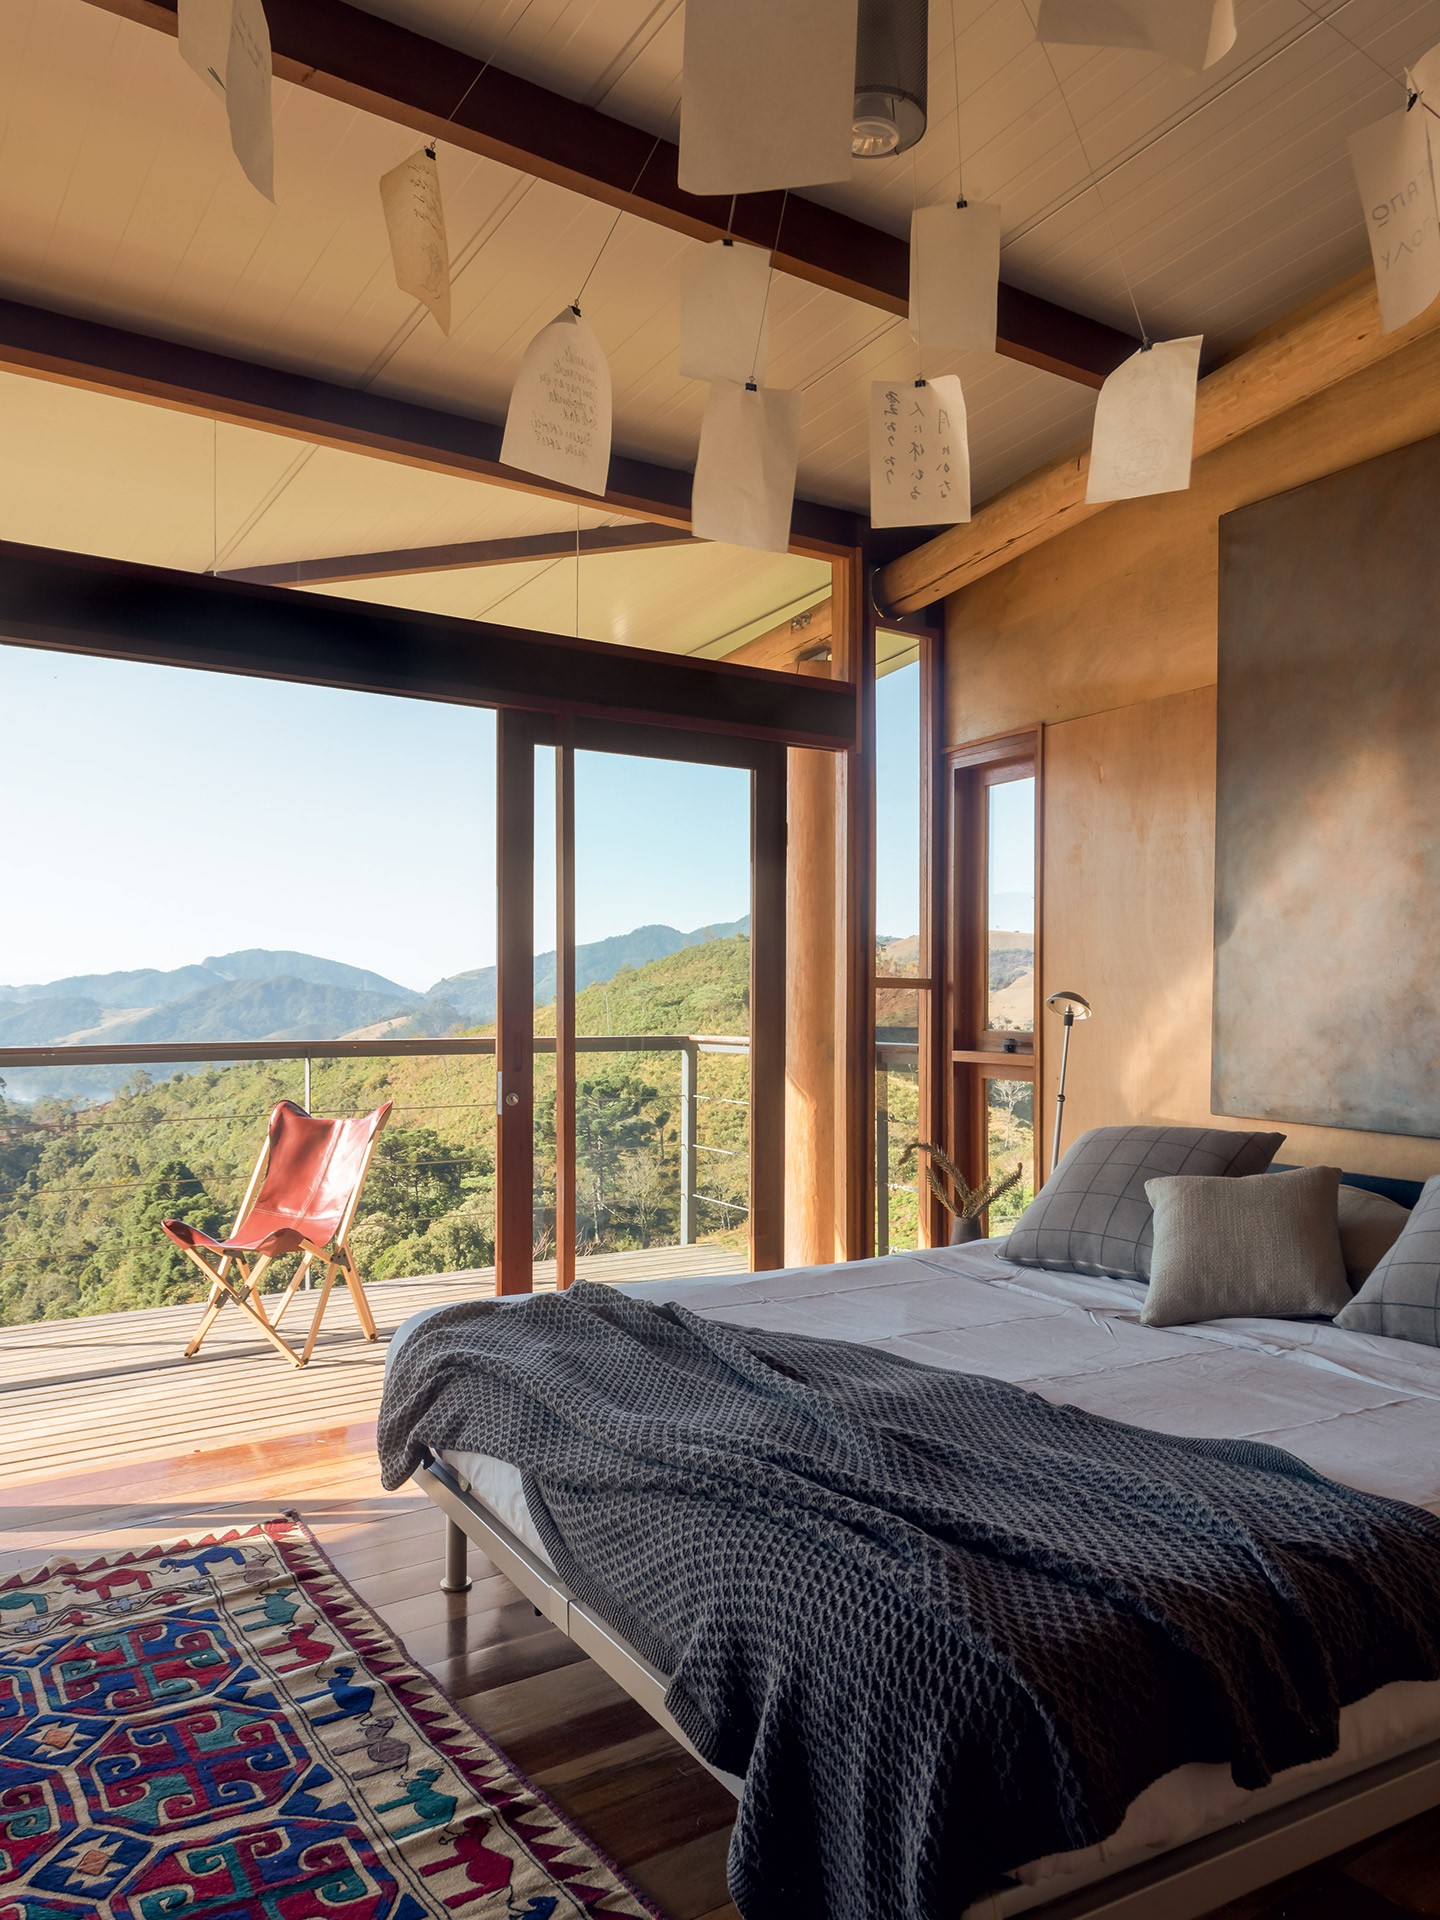 Casa de campo tem estrutura de madeira e vista de 180º para a paisagem do entorno (Foto: Wesley Diego Emes)